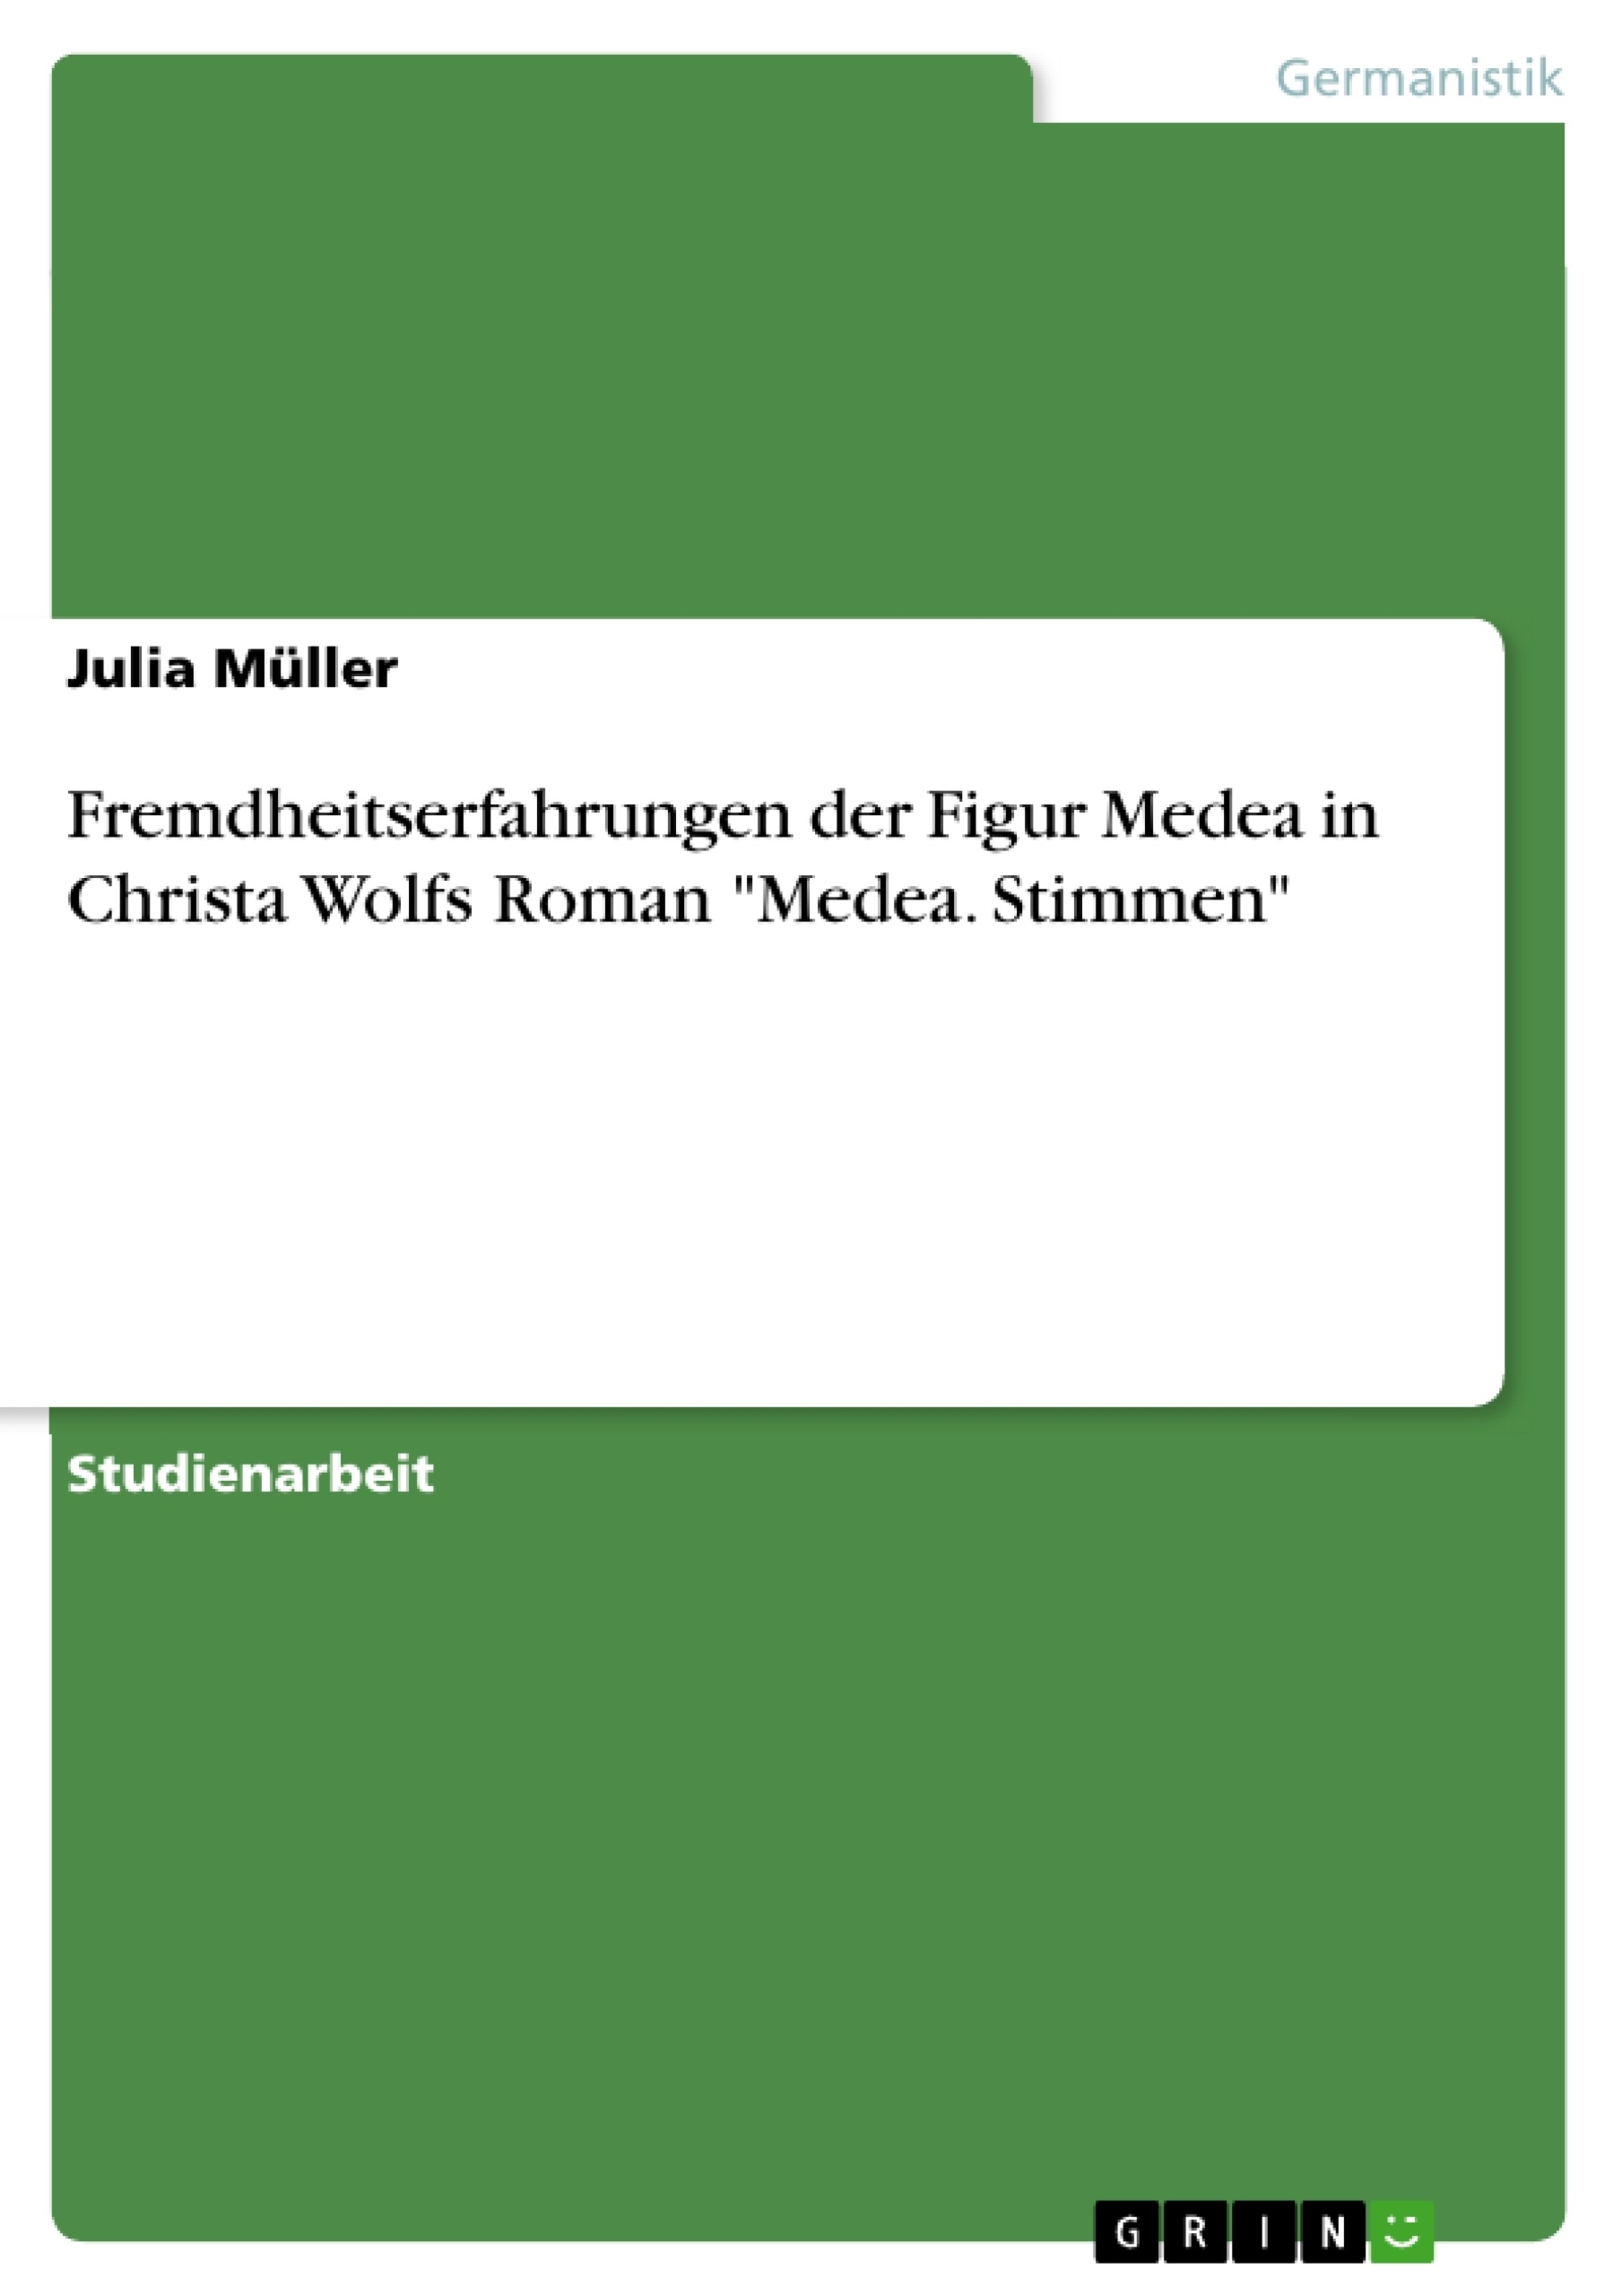 Titre: Fremdheitserfahrungen der Figur Medea in Christa Wolfs Roman "Medea. Stimmen"